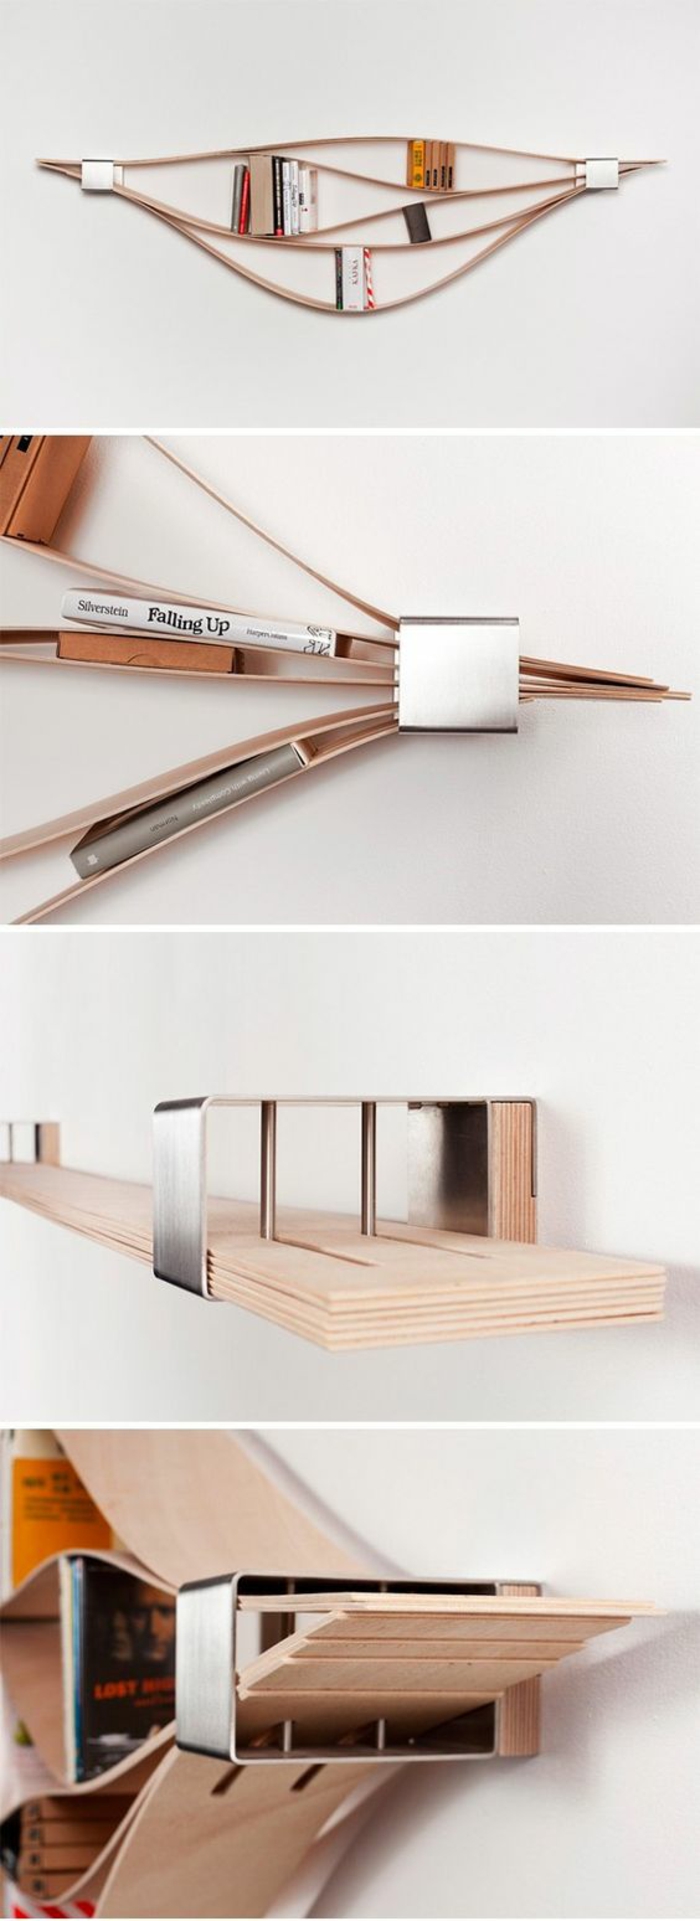 11-رف-بك-بناء قطع الخشب-DIY-رفوف الكتب الجدار التصميم wanddeko